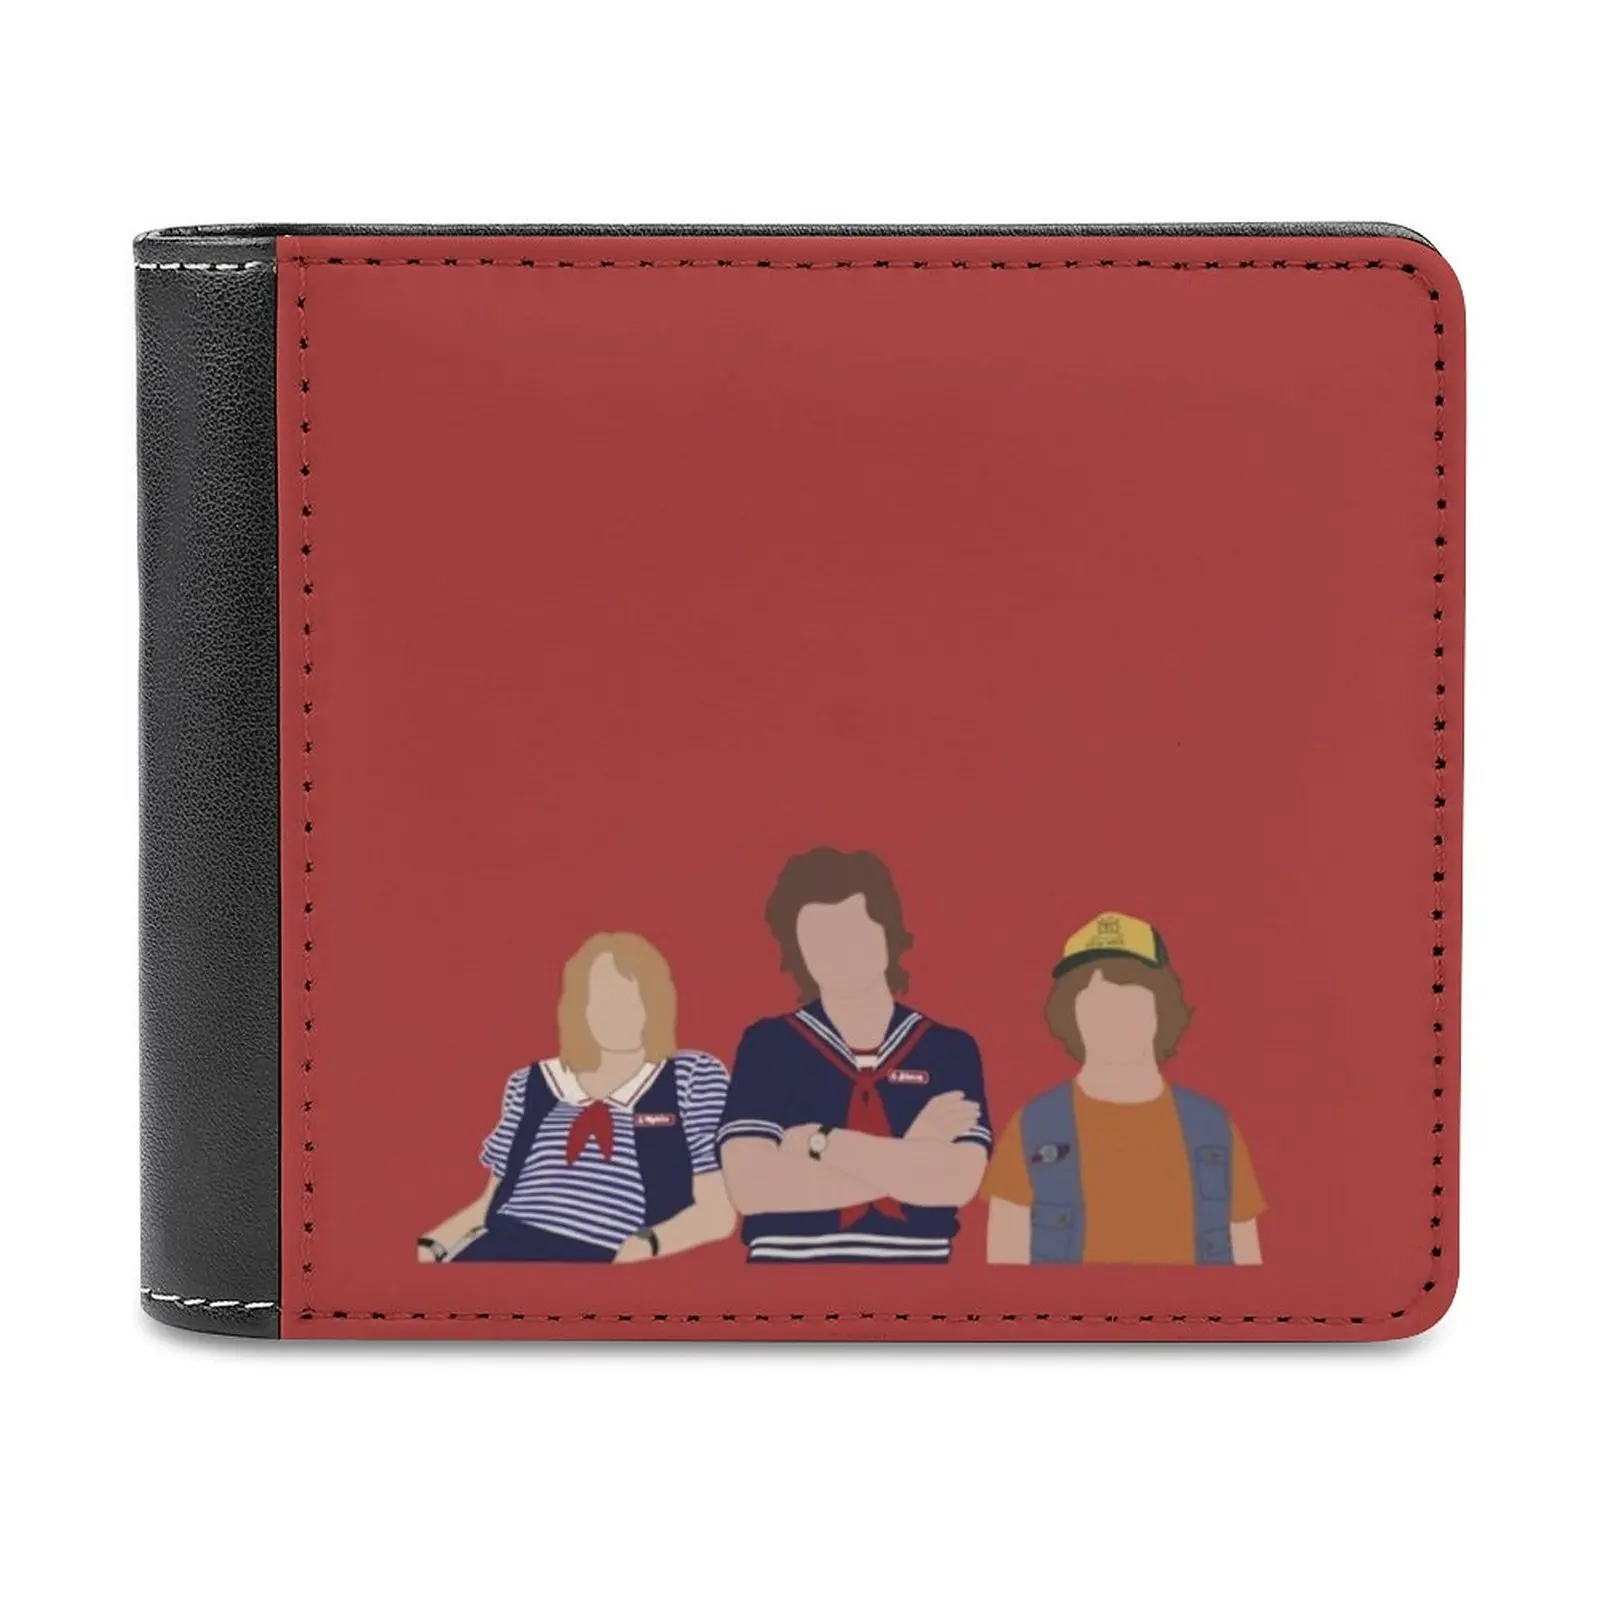 

The Scoops Troop Men's Wallet Pattern Leather Men's Short Wallet Multi-Card Wallet Fashion Purse Steve Robin Dustin Henderson